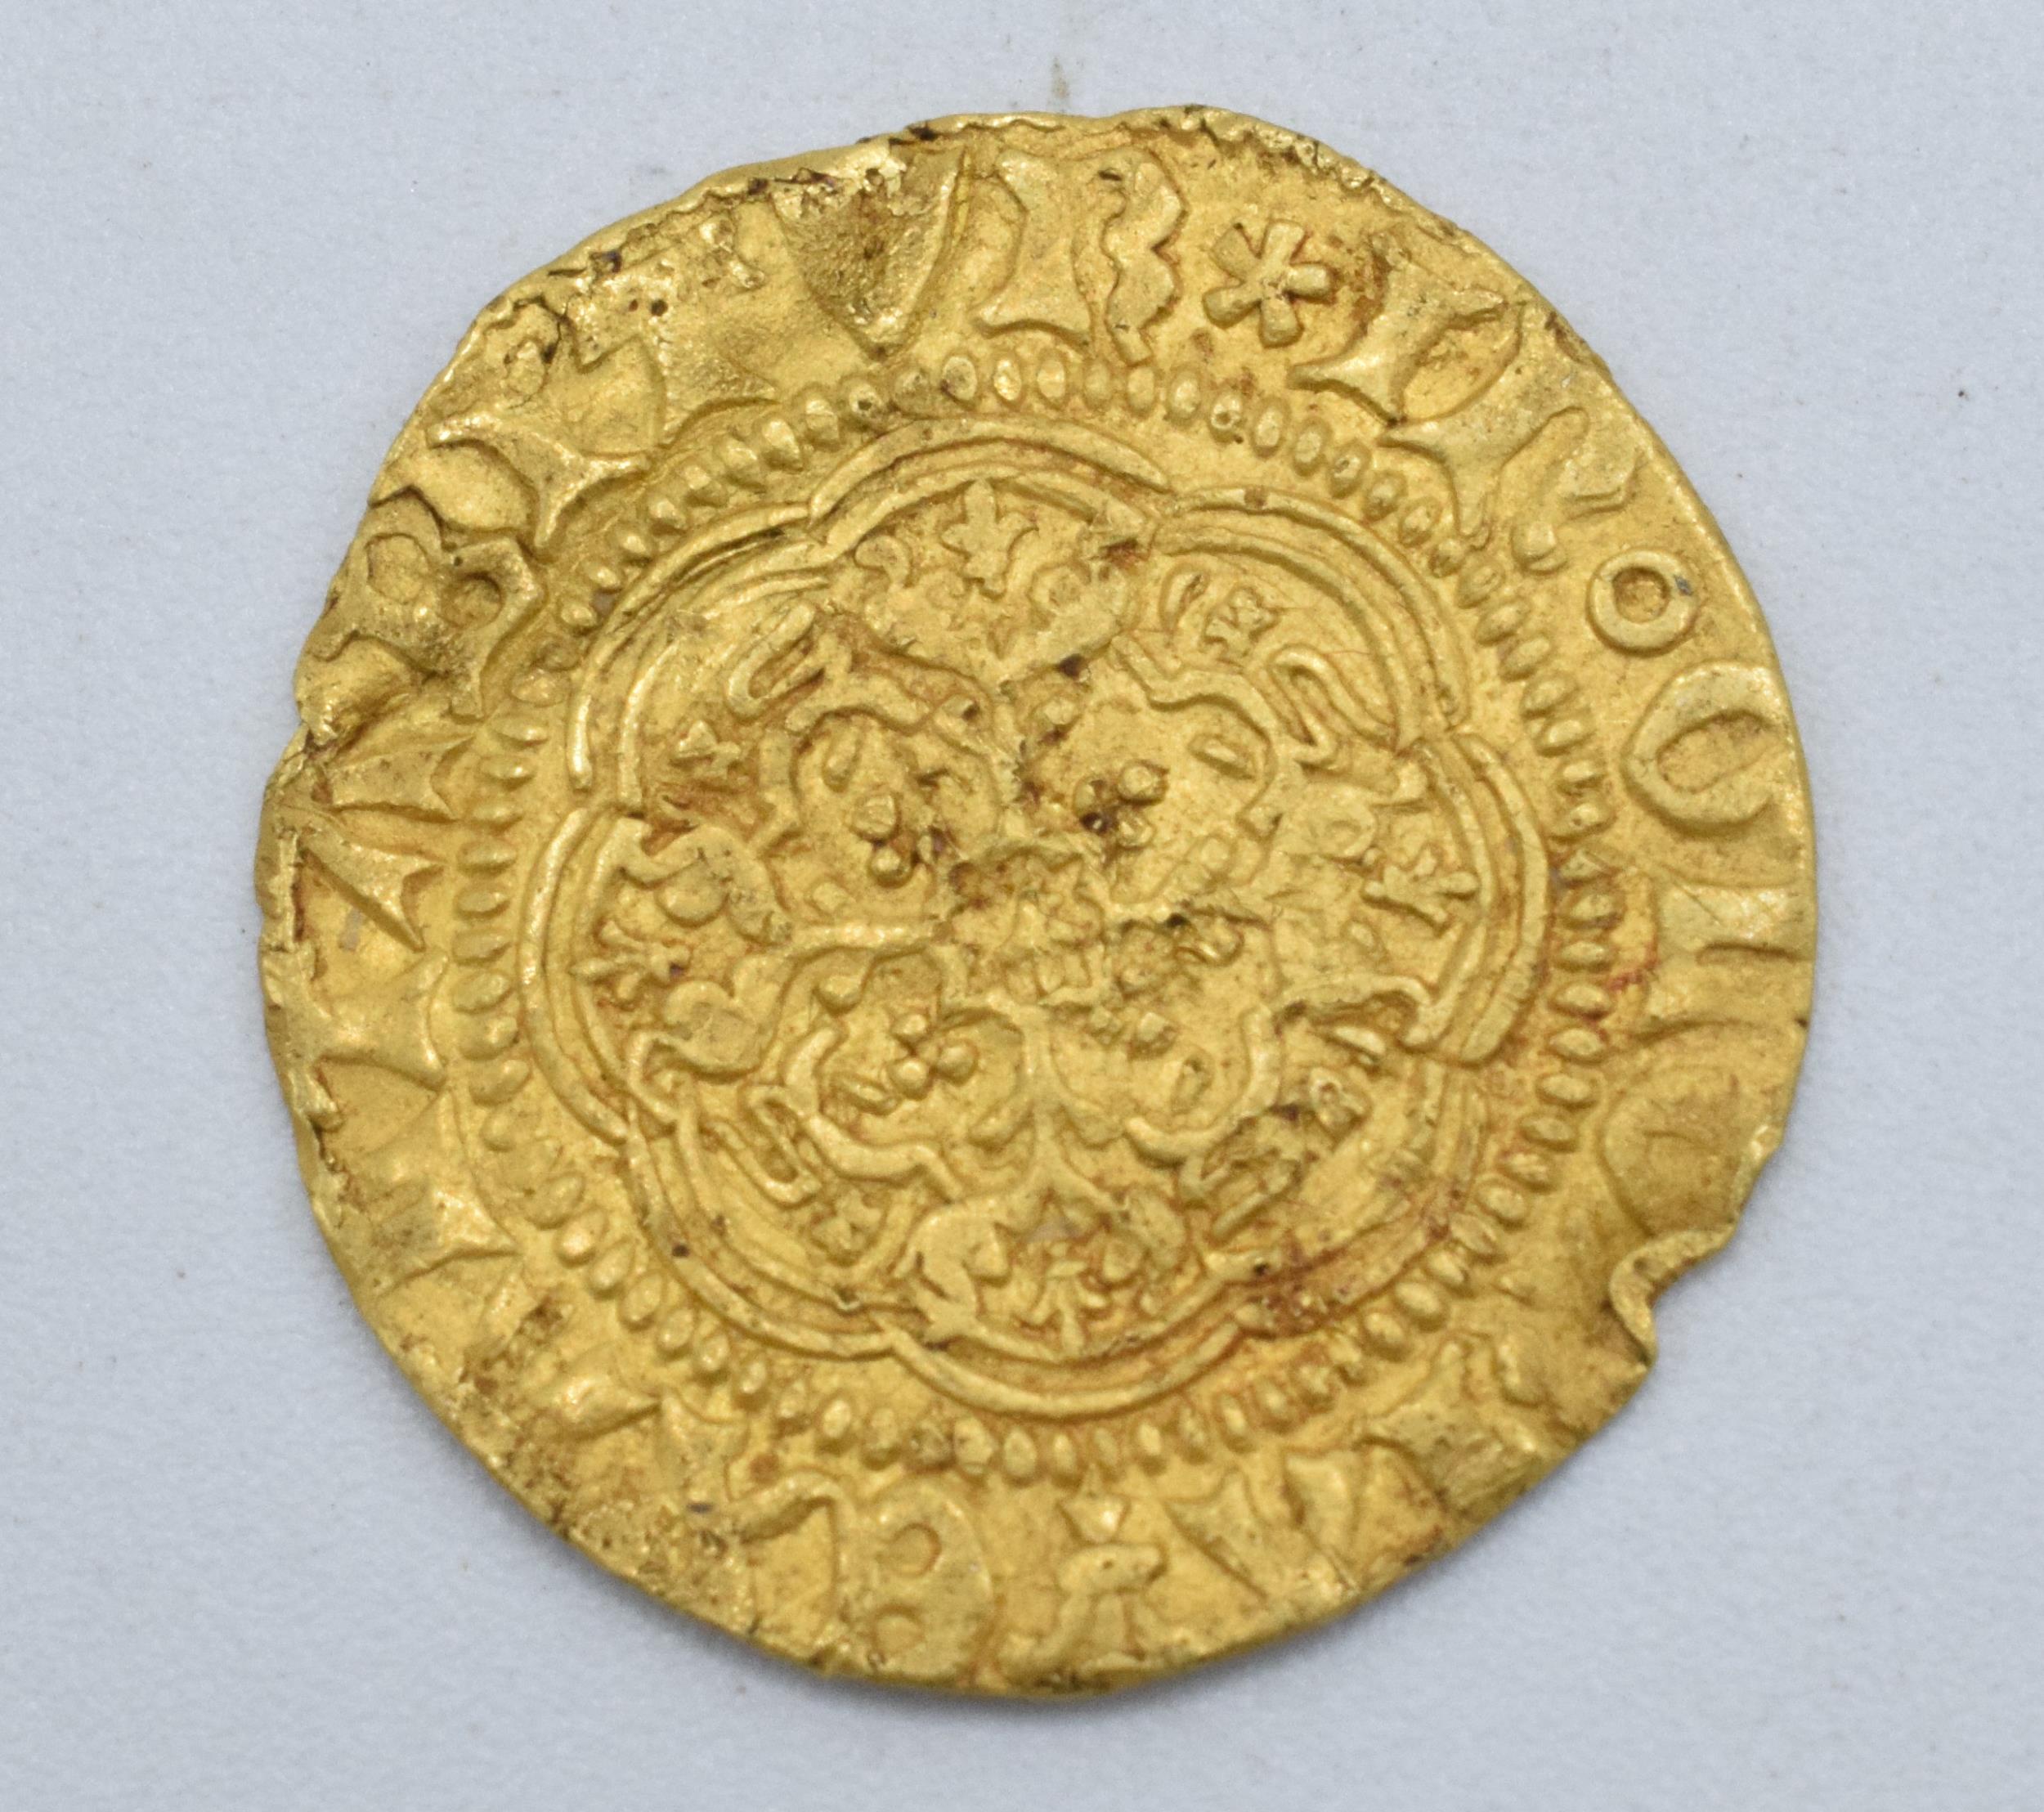 Henry VI 1422-1461 Quarter Noble gold coin. 1.6 grams. 19mm diameter. - Image 2 of 2